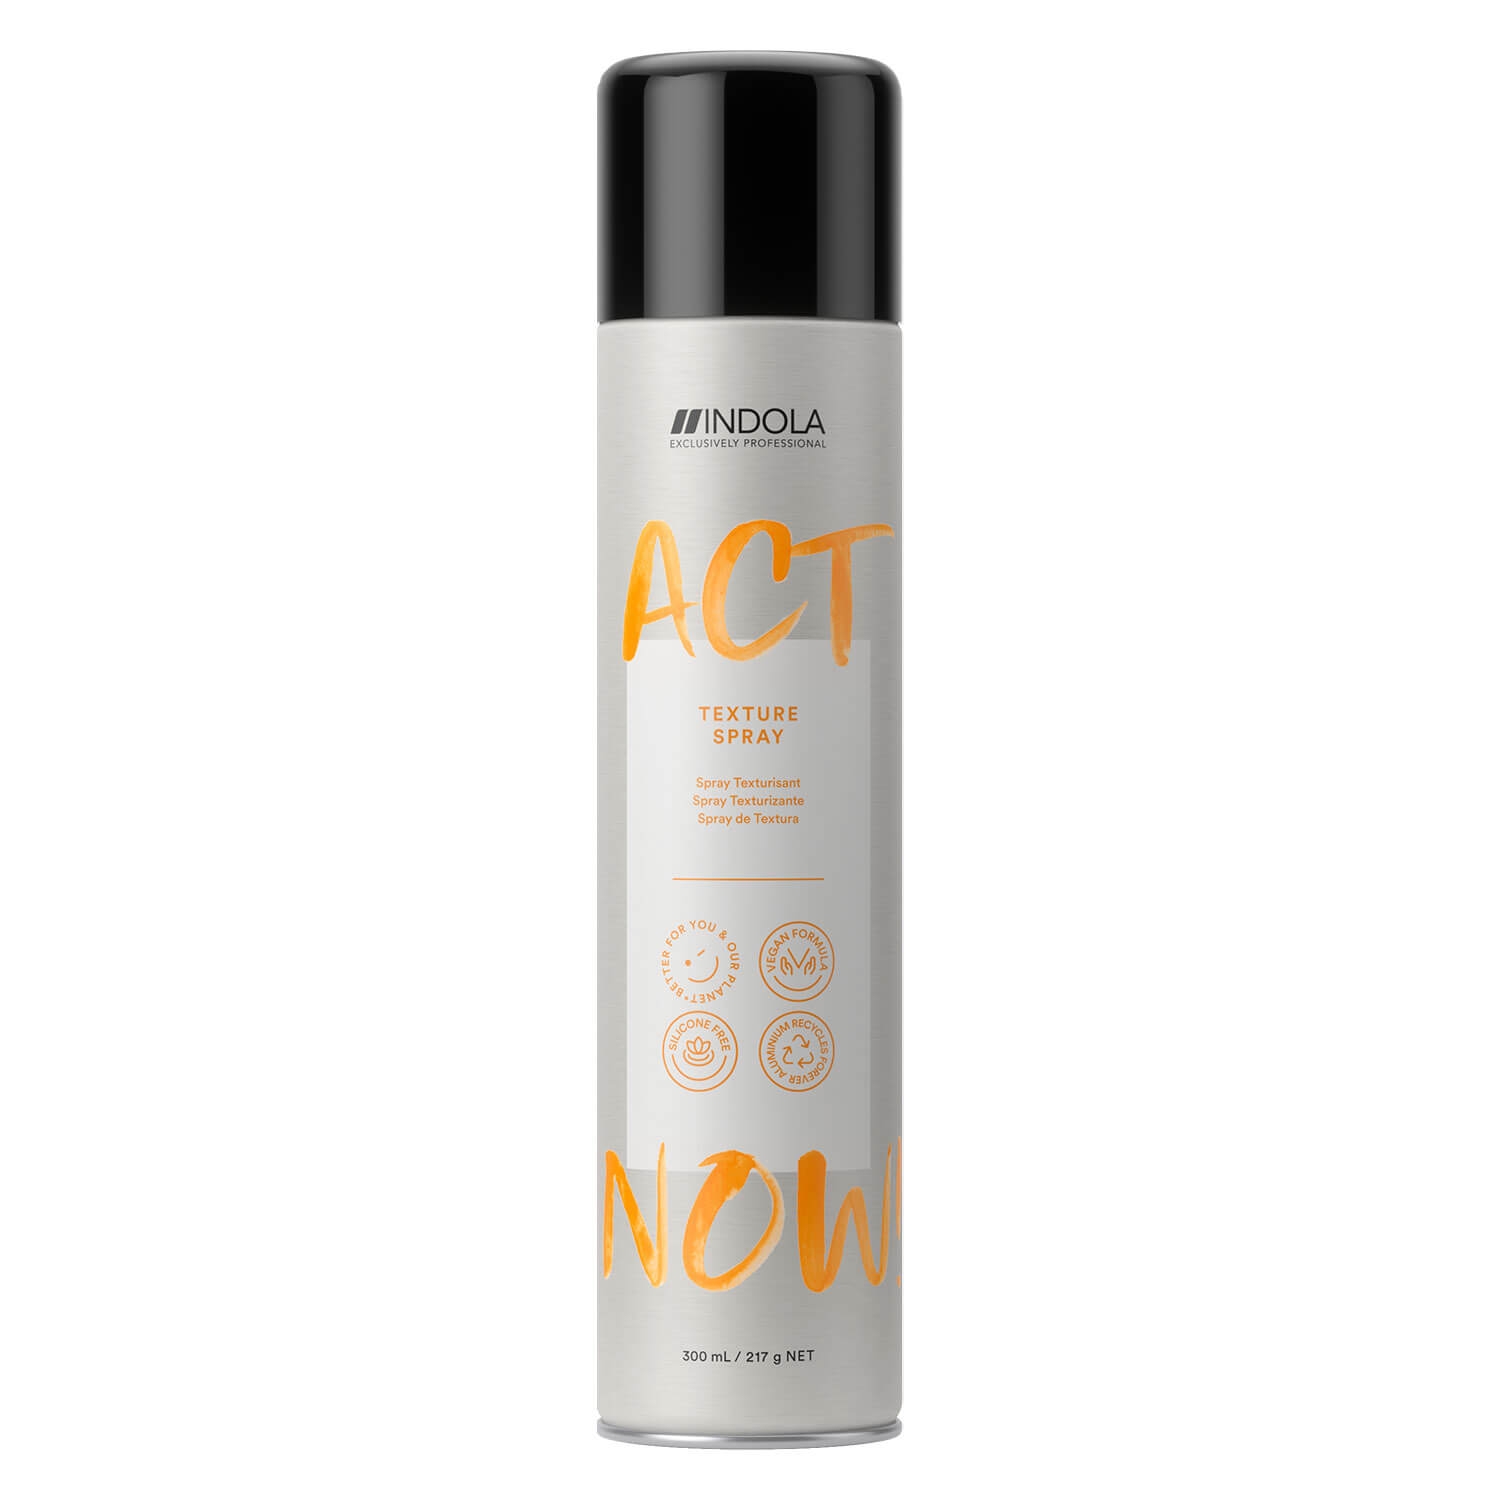 Produktbild von ACT NOW - Texture Spray